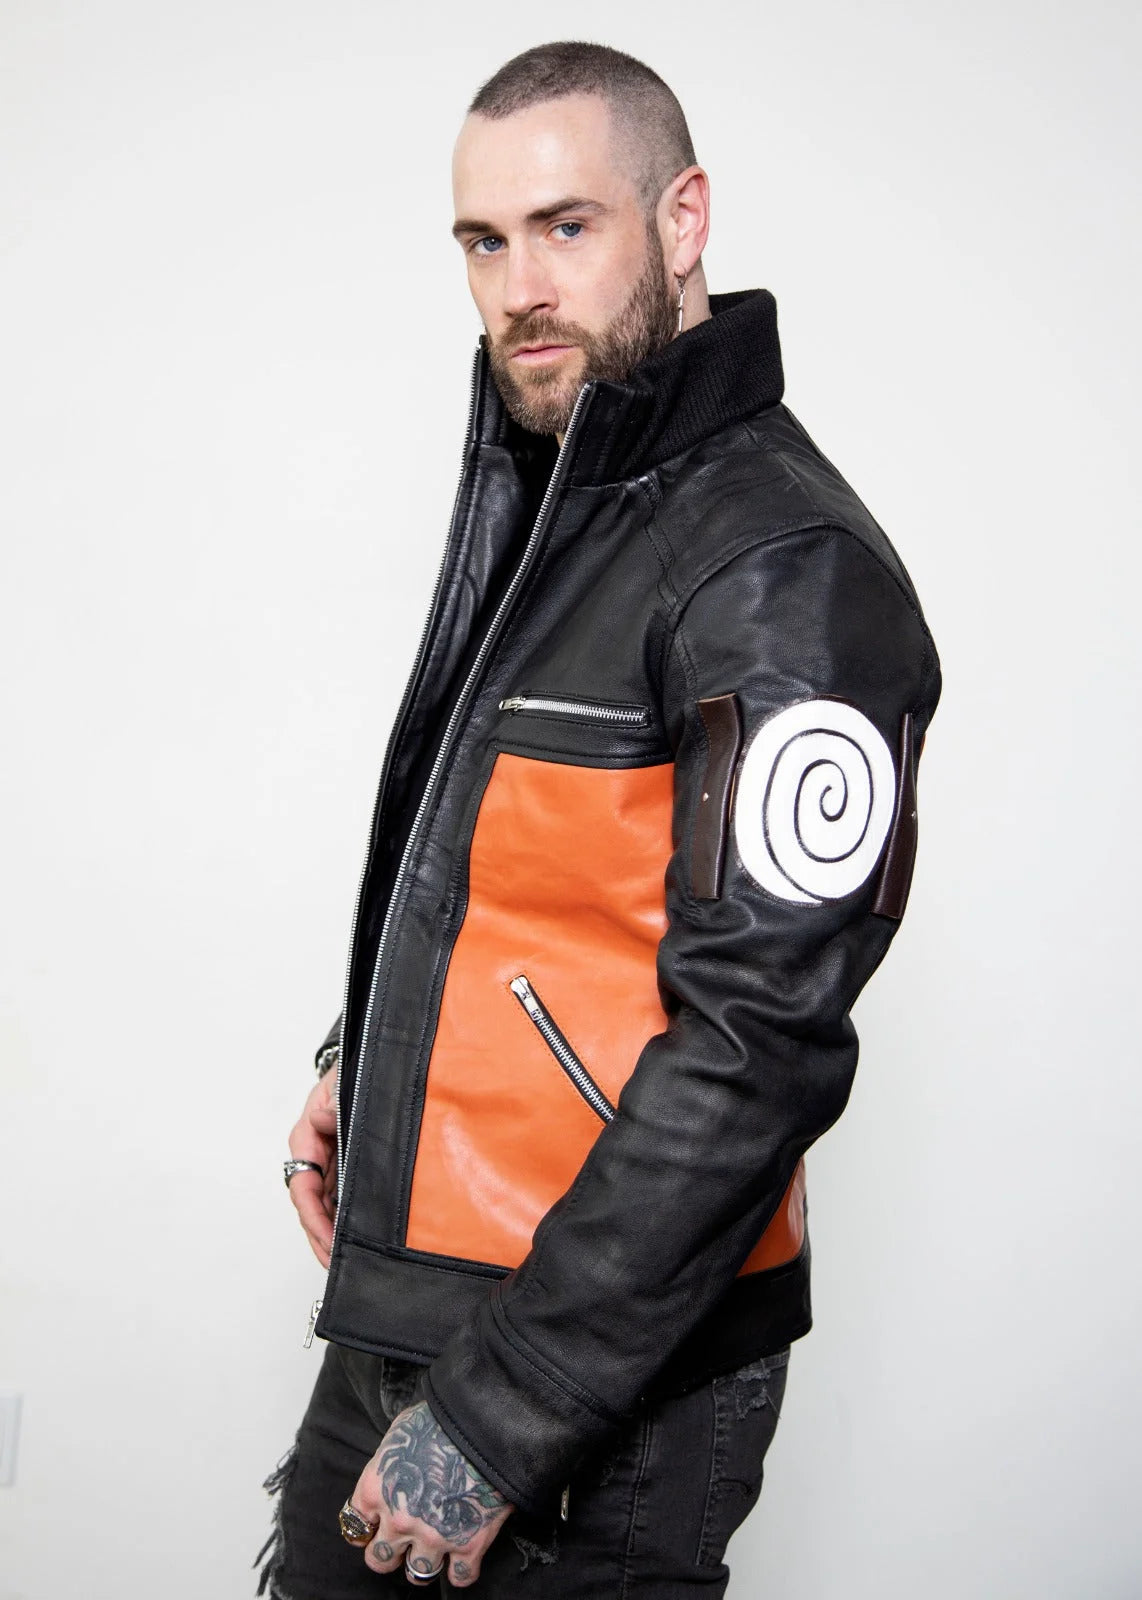 Naruto Shippuden Uzumaki Orange and black jacket | Movie leather jacket